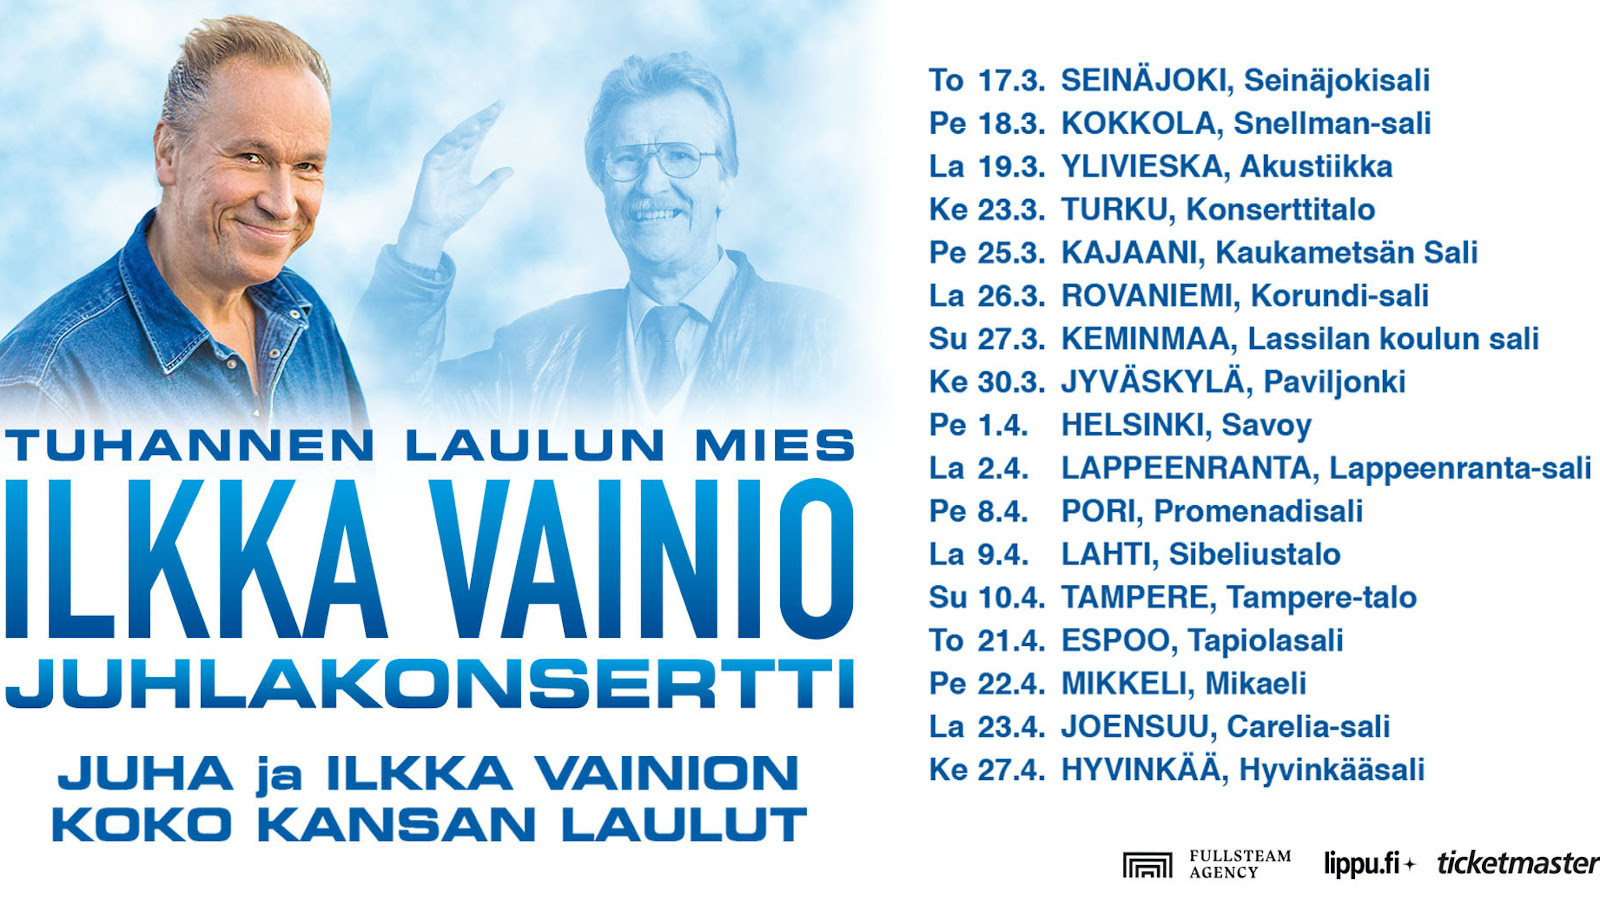 Kuvassa on Ilkka "Ile" Vainion kevään 2022 "Koko kansan laulut" -konserttikiertueen kalenteri. 